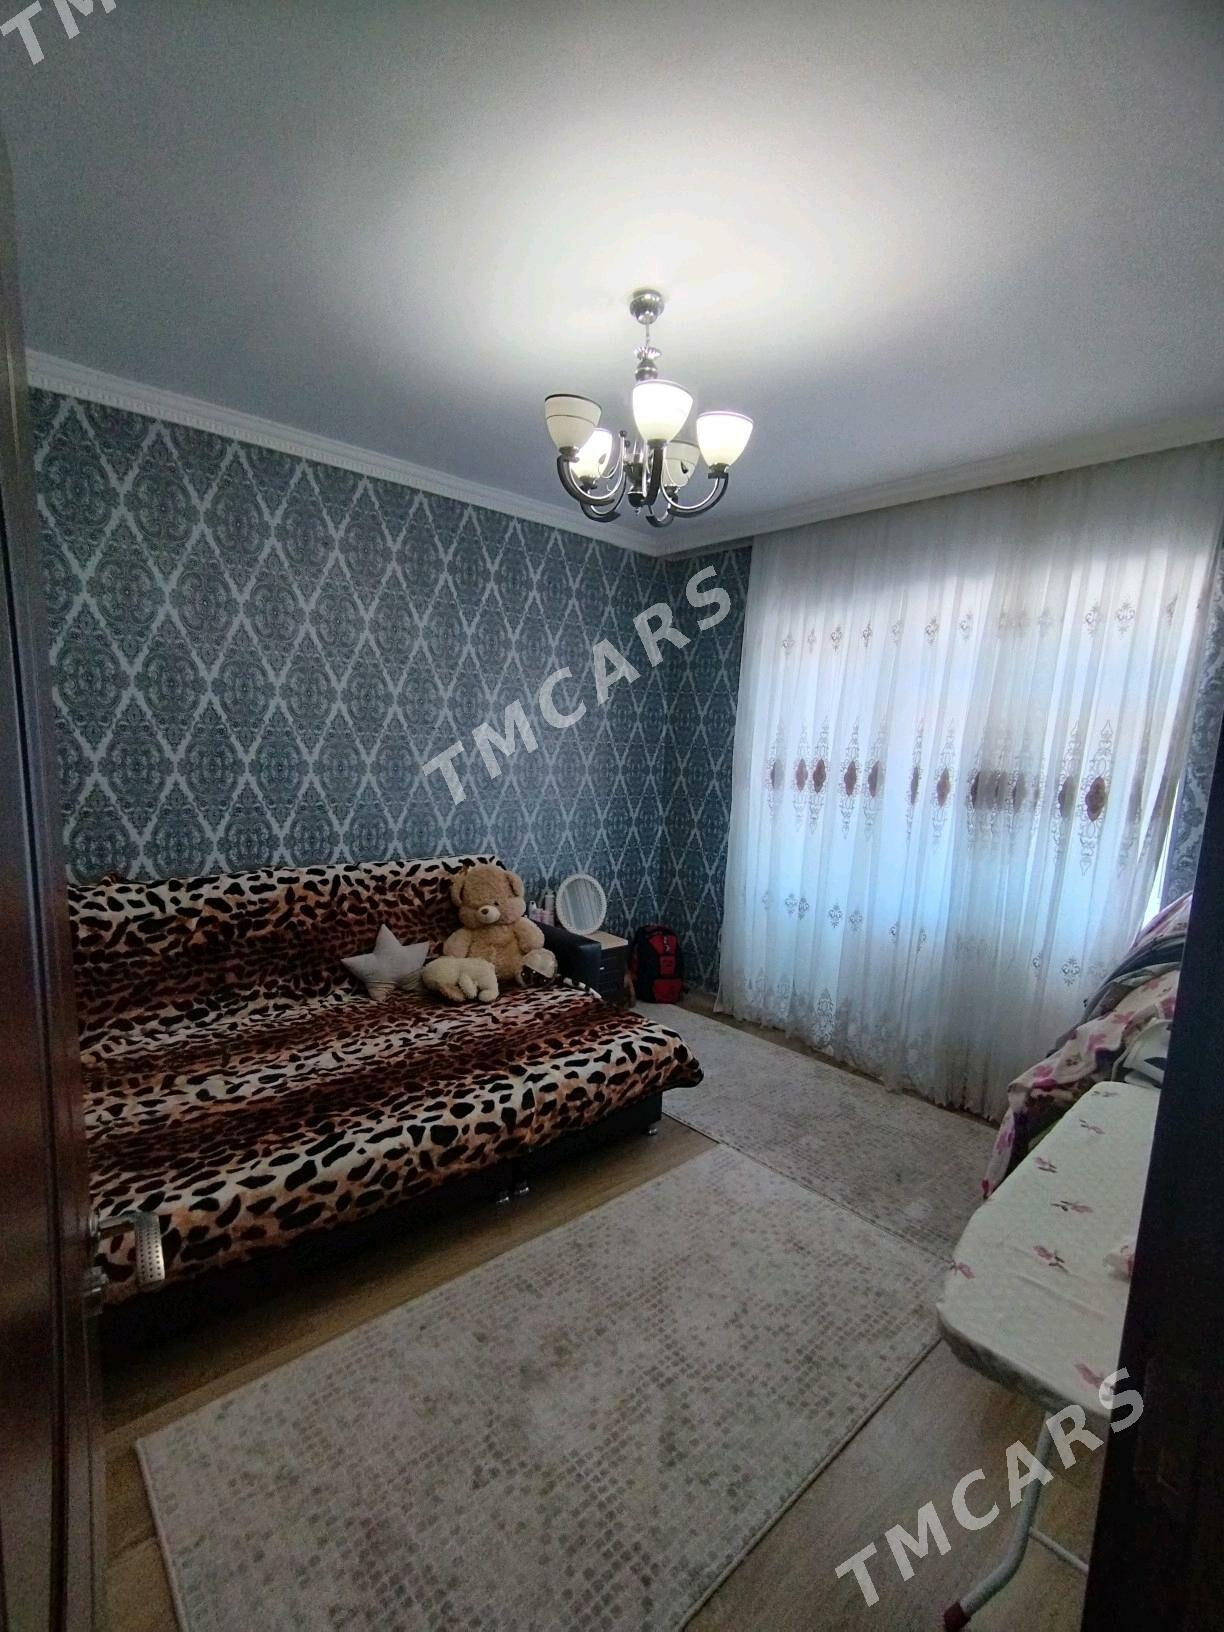 Продам квартиру 3 ком 3 этаж - Туркменбаши - img 2